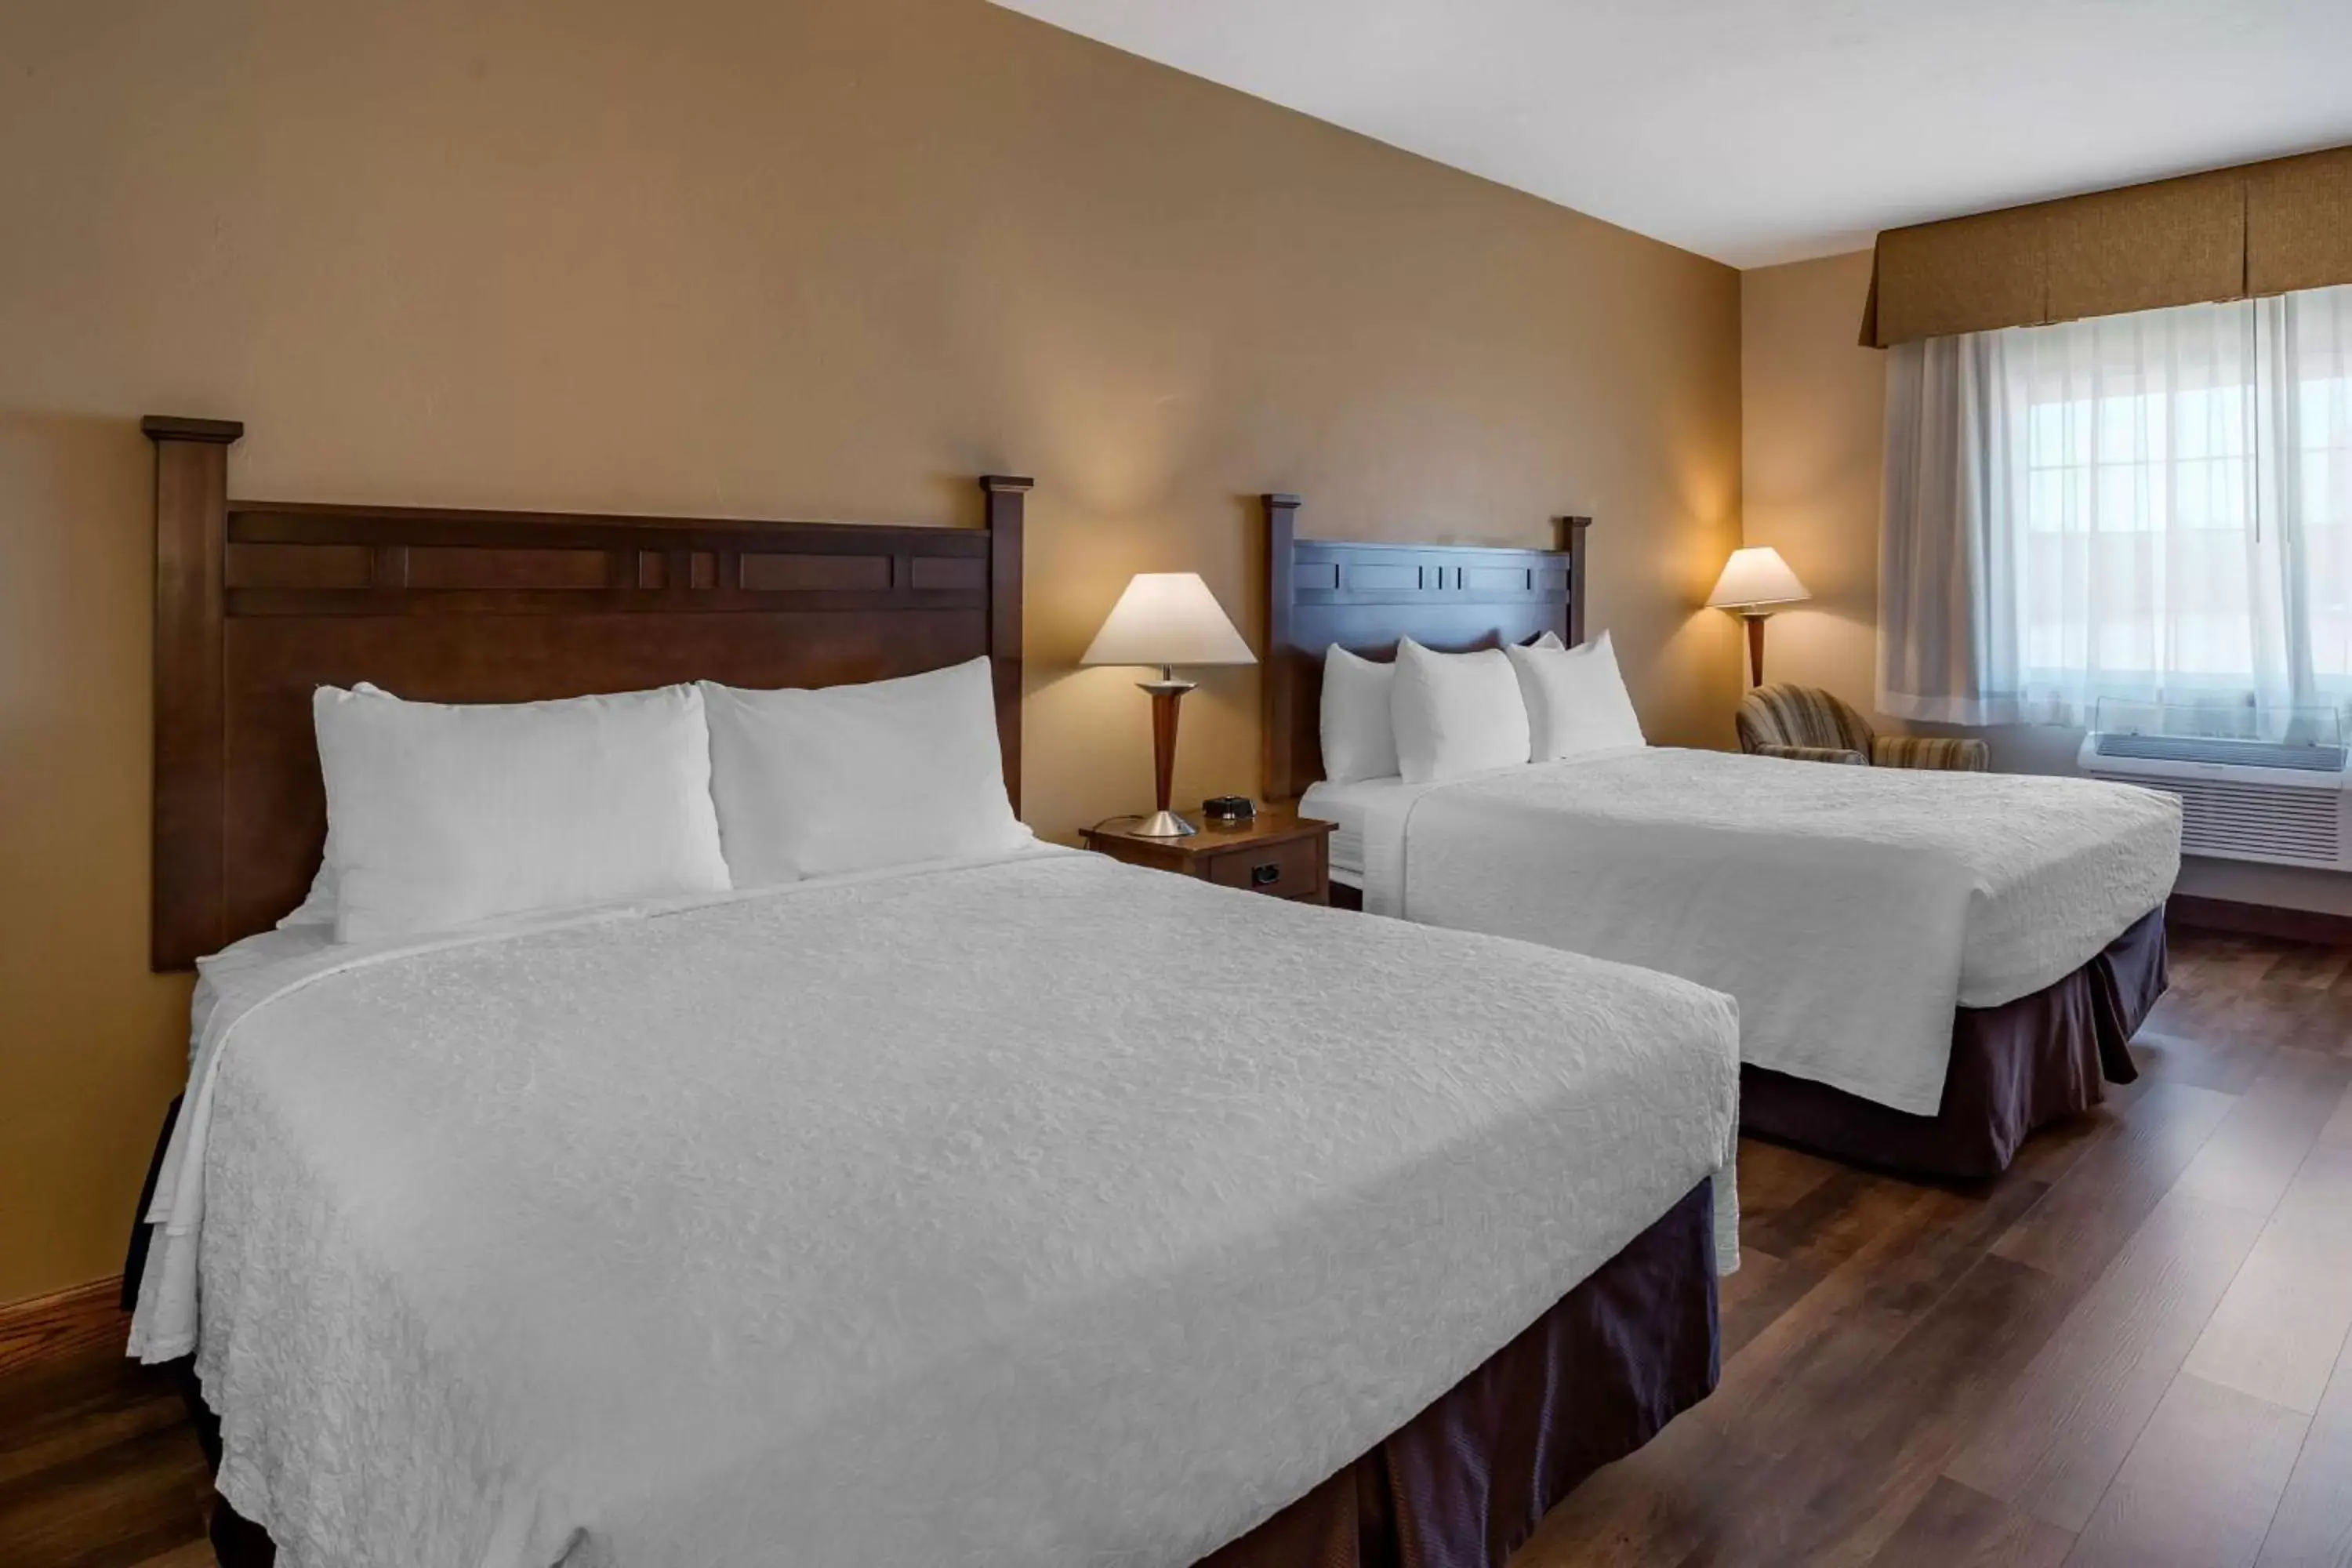 Bedroom, Bed in Best Western Desert Inn